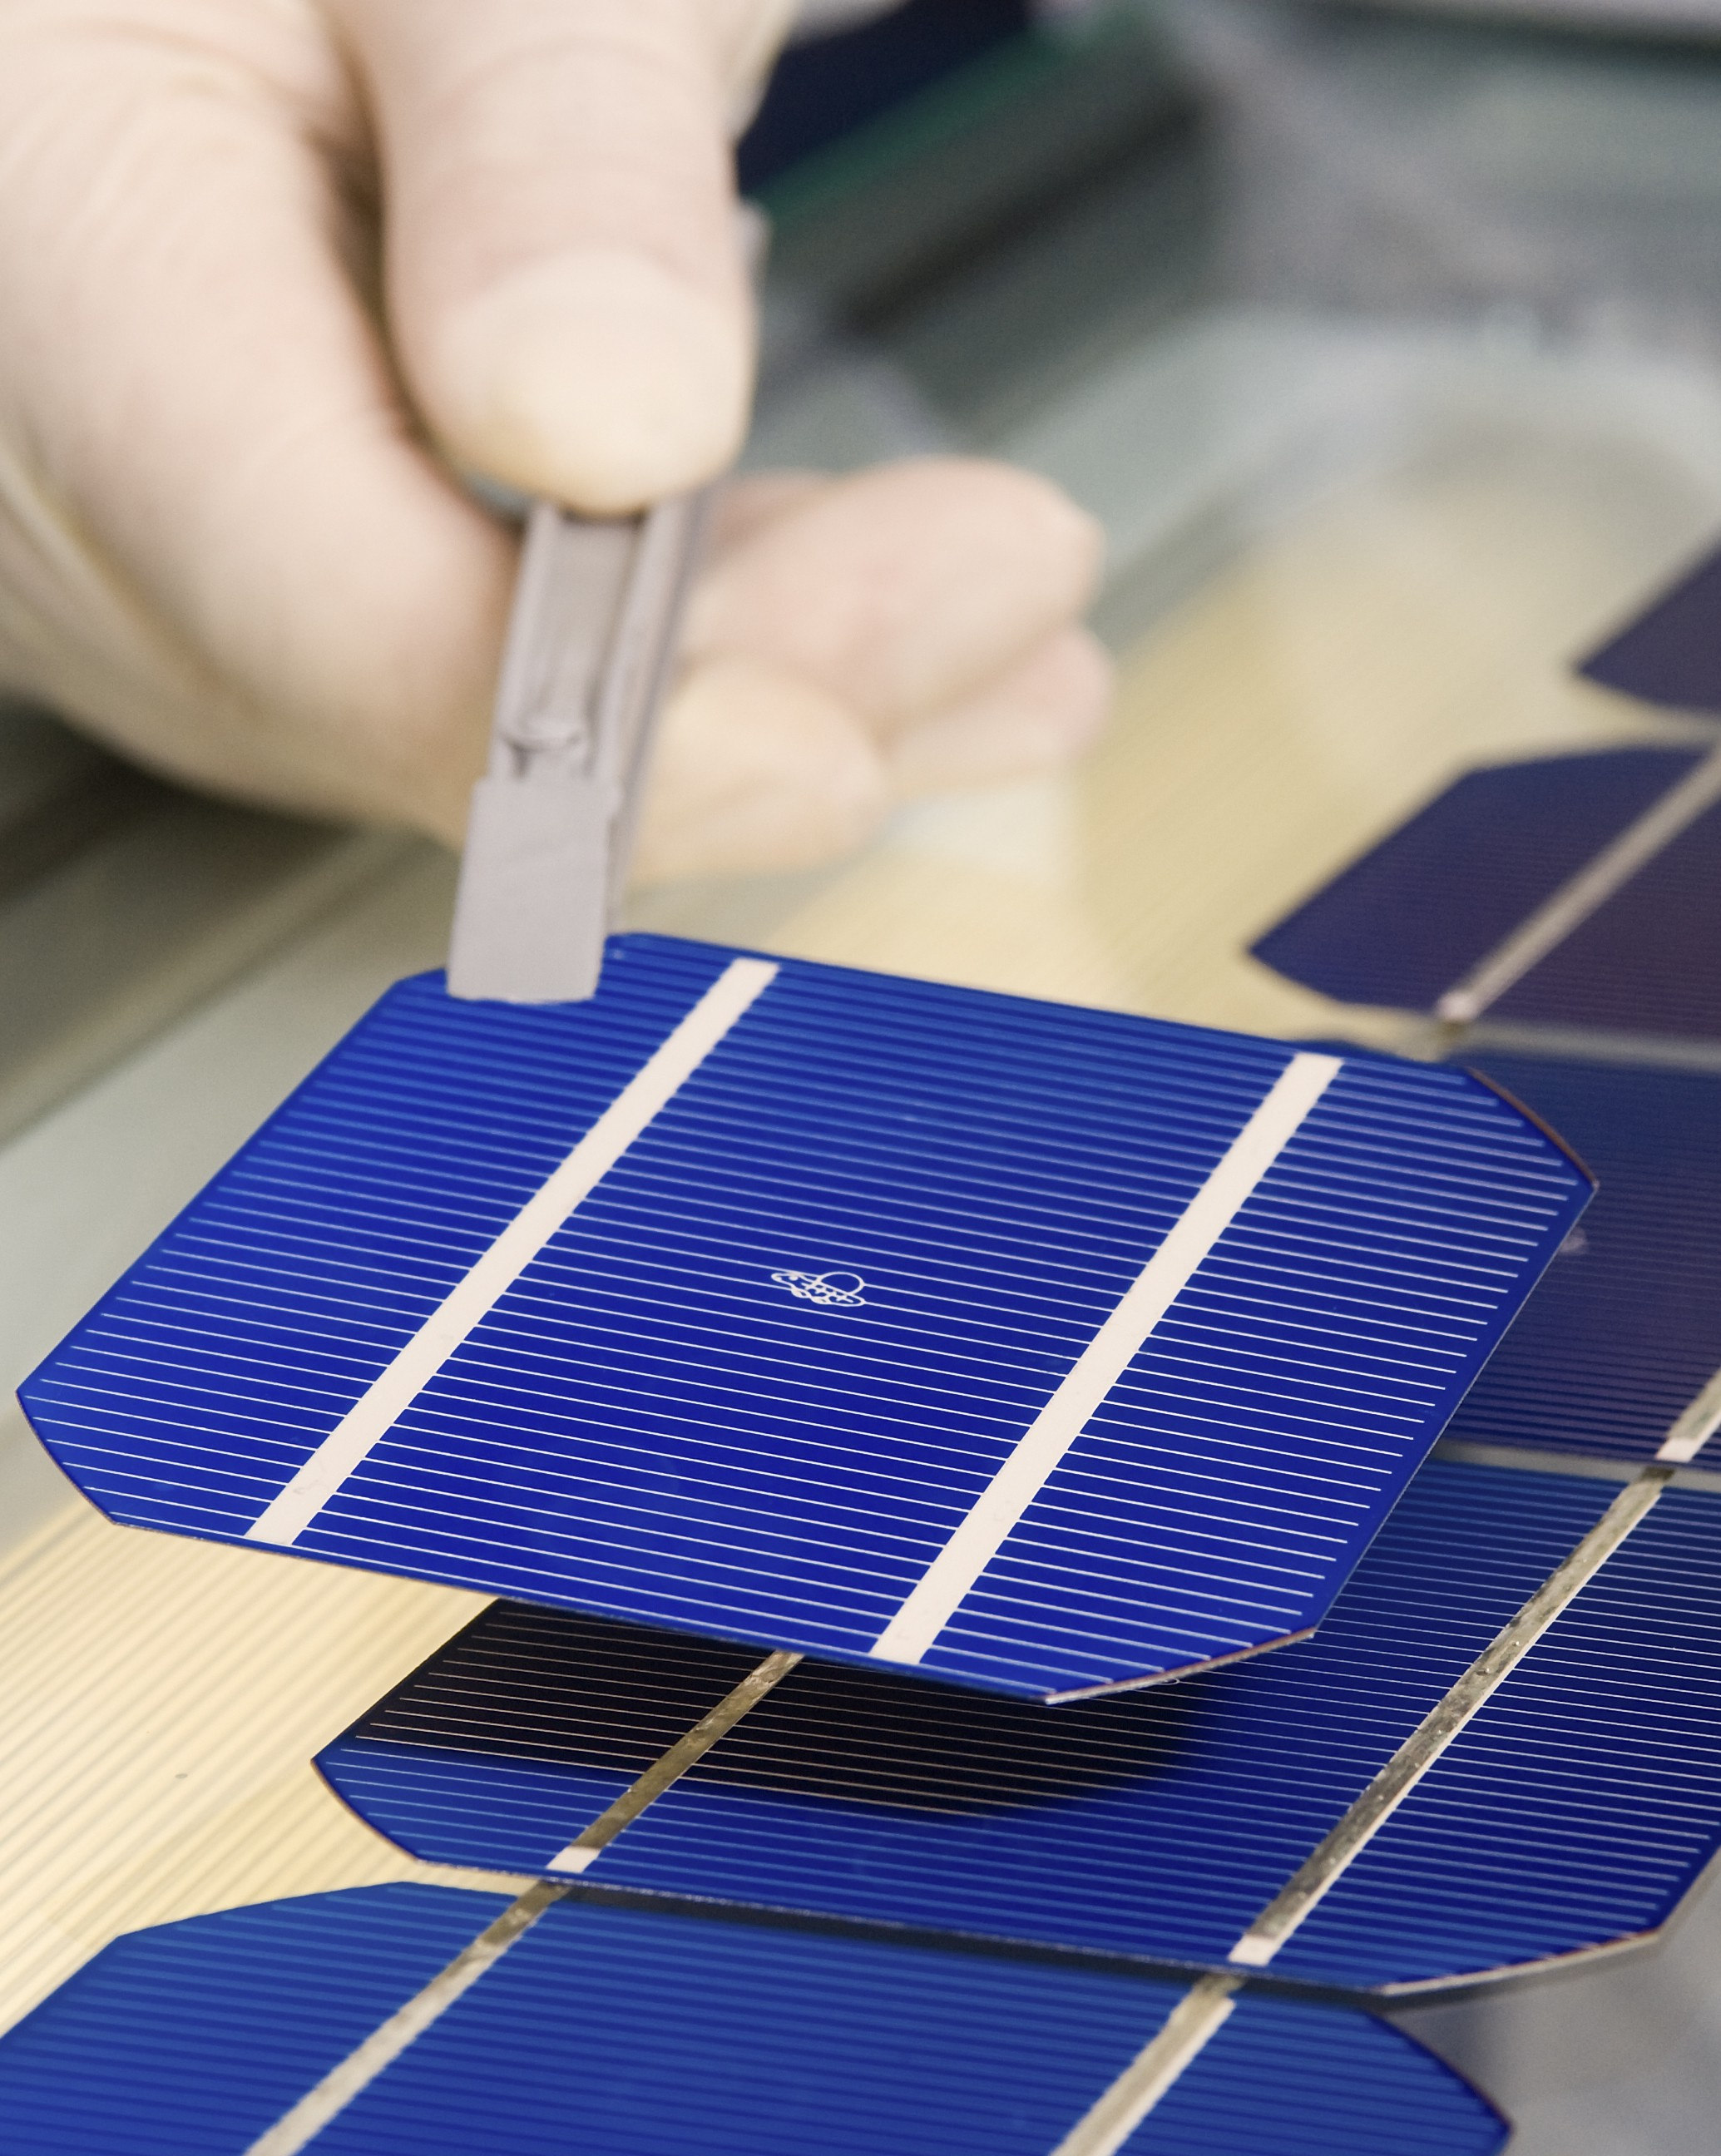 Planta Piloto Inovações - Tecnologia: células solares de alta eficiência com insumos de baixo